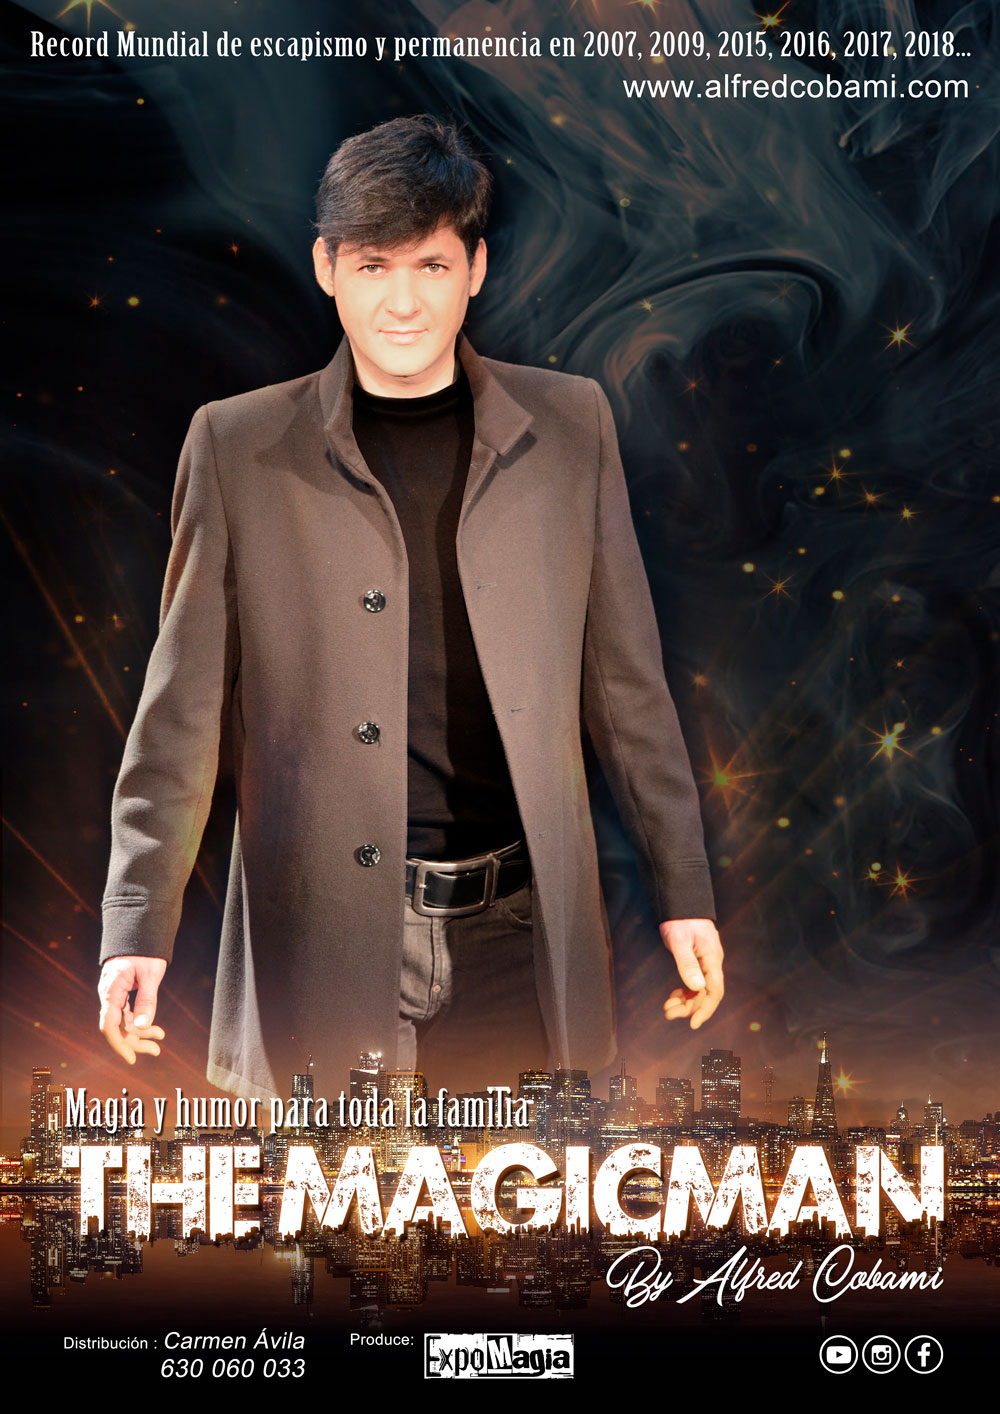 Imagen del cartel del espectáculo de magia